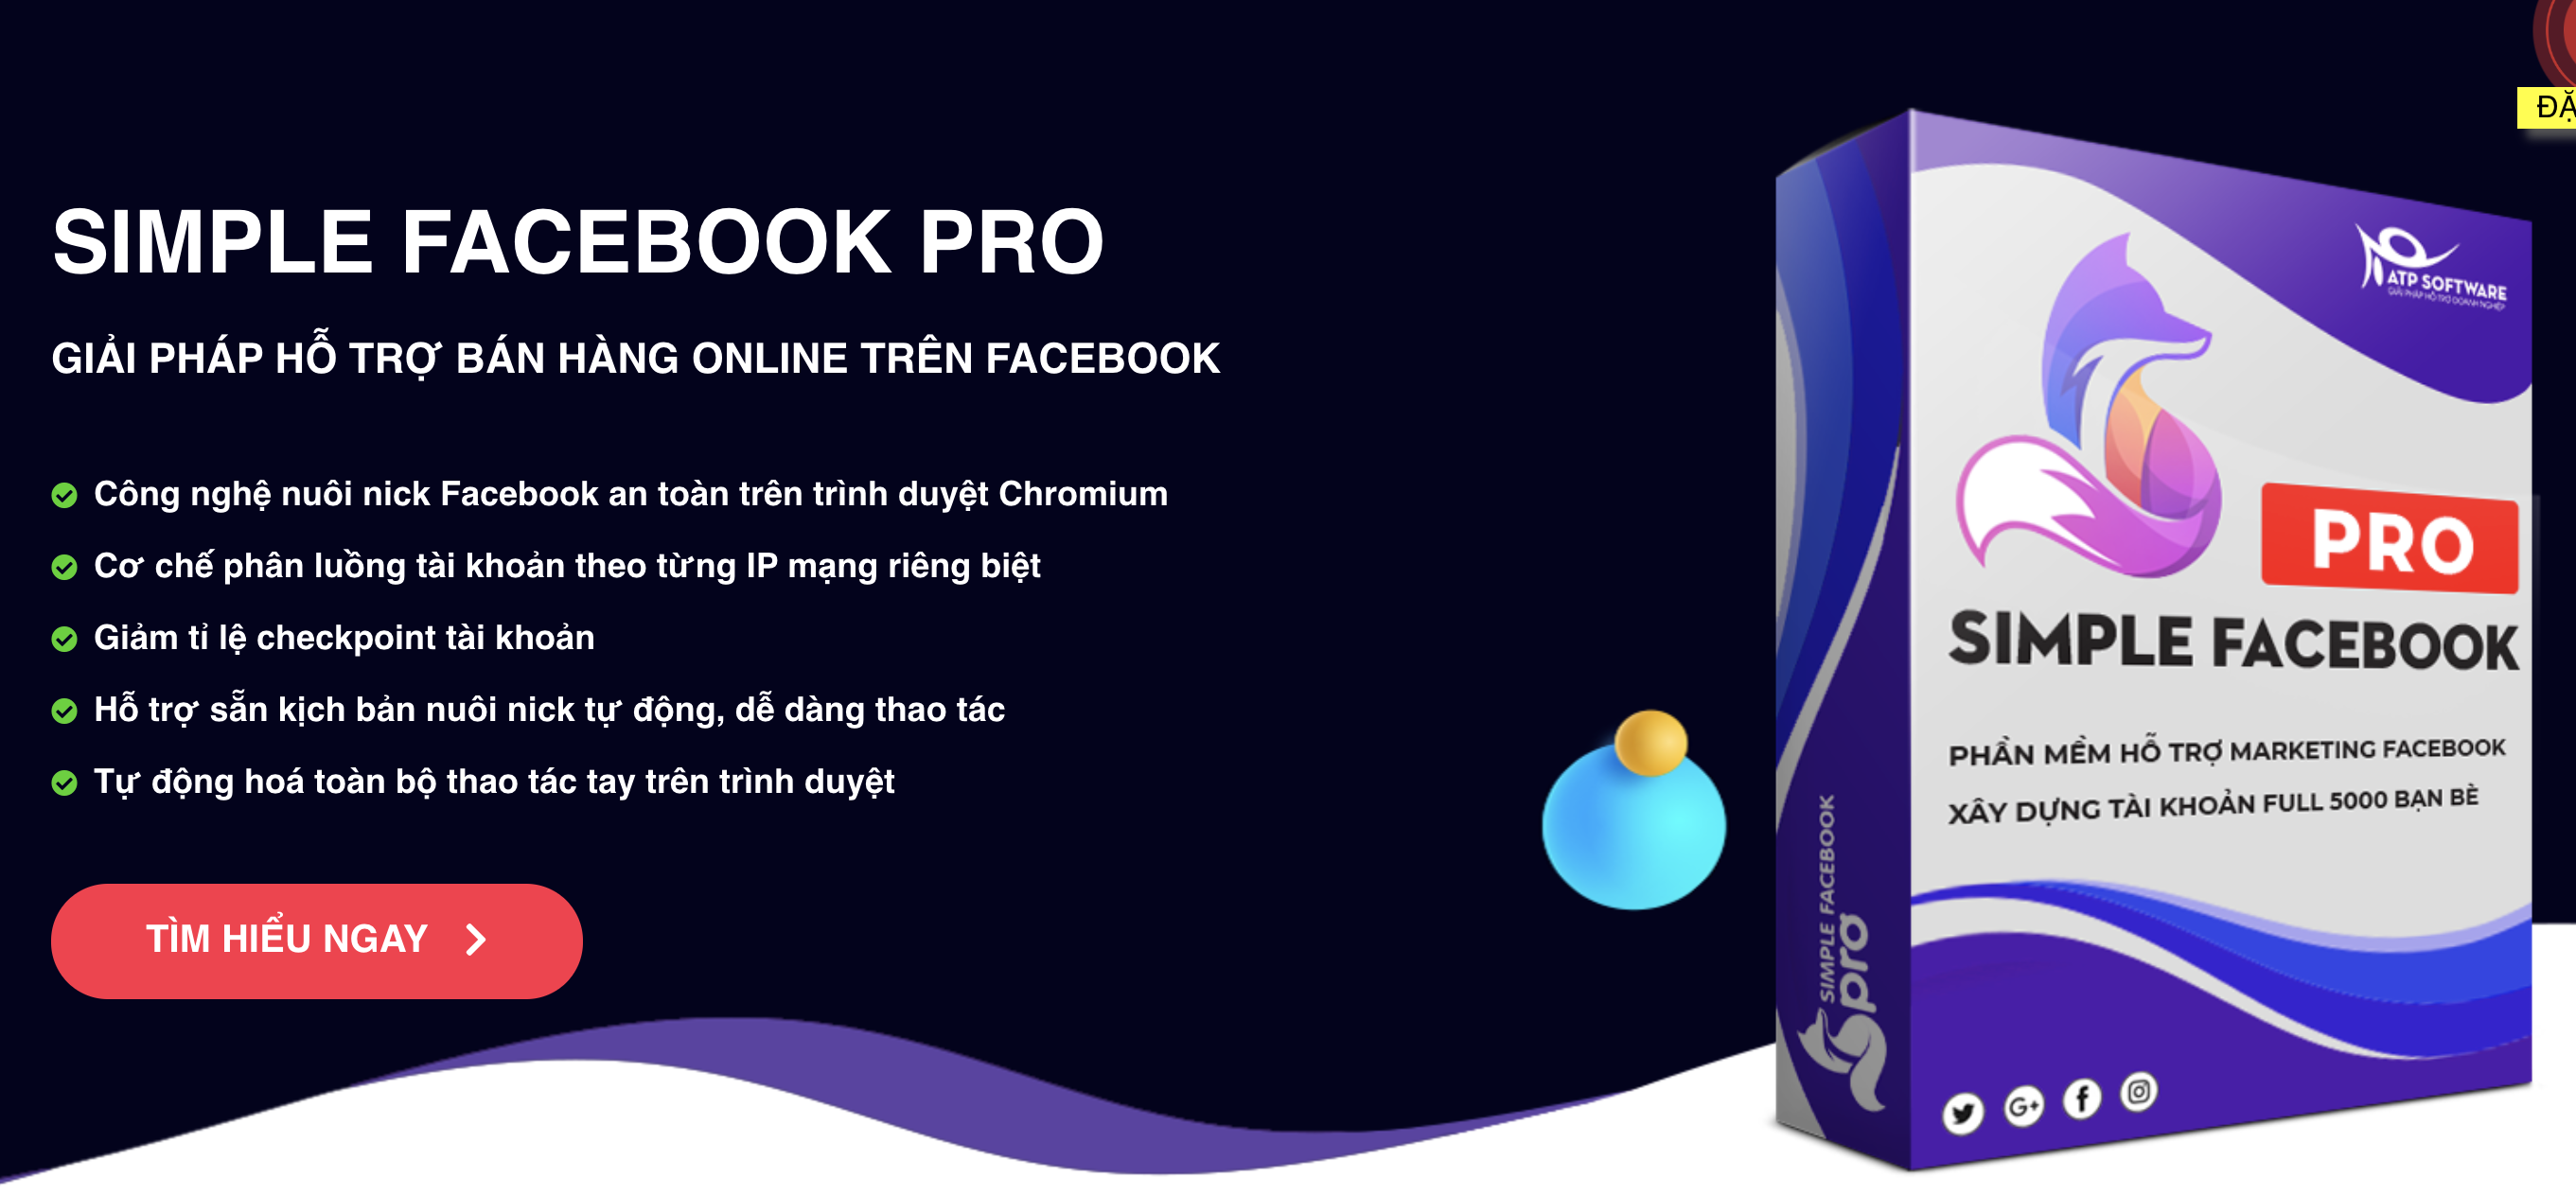 Phần mềm hỗ trợ kết bạn khách hàng tiềm năng, nuôi nick Facebook, xây dựng trang cá nhân bán hàng trên Facebook